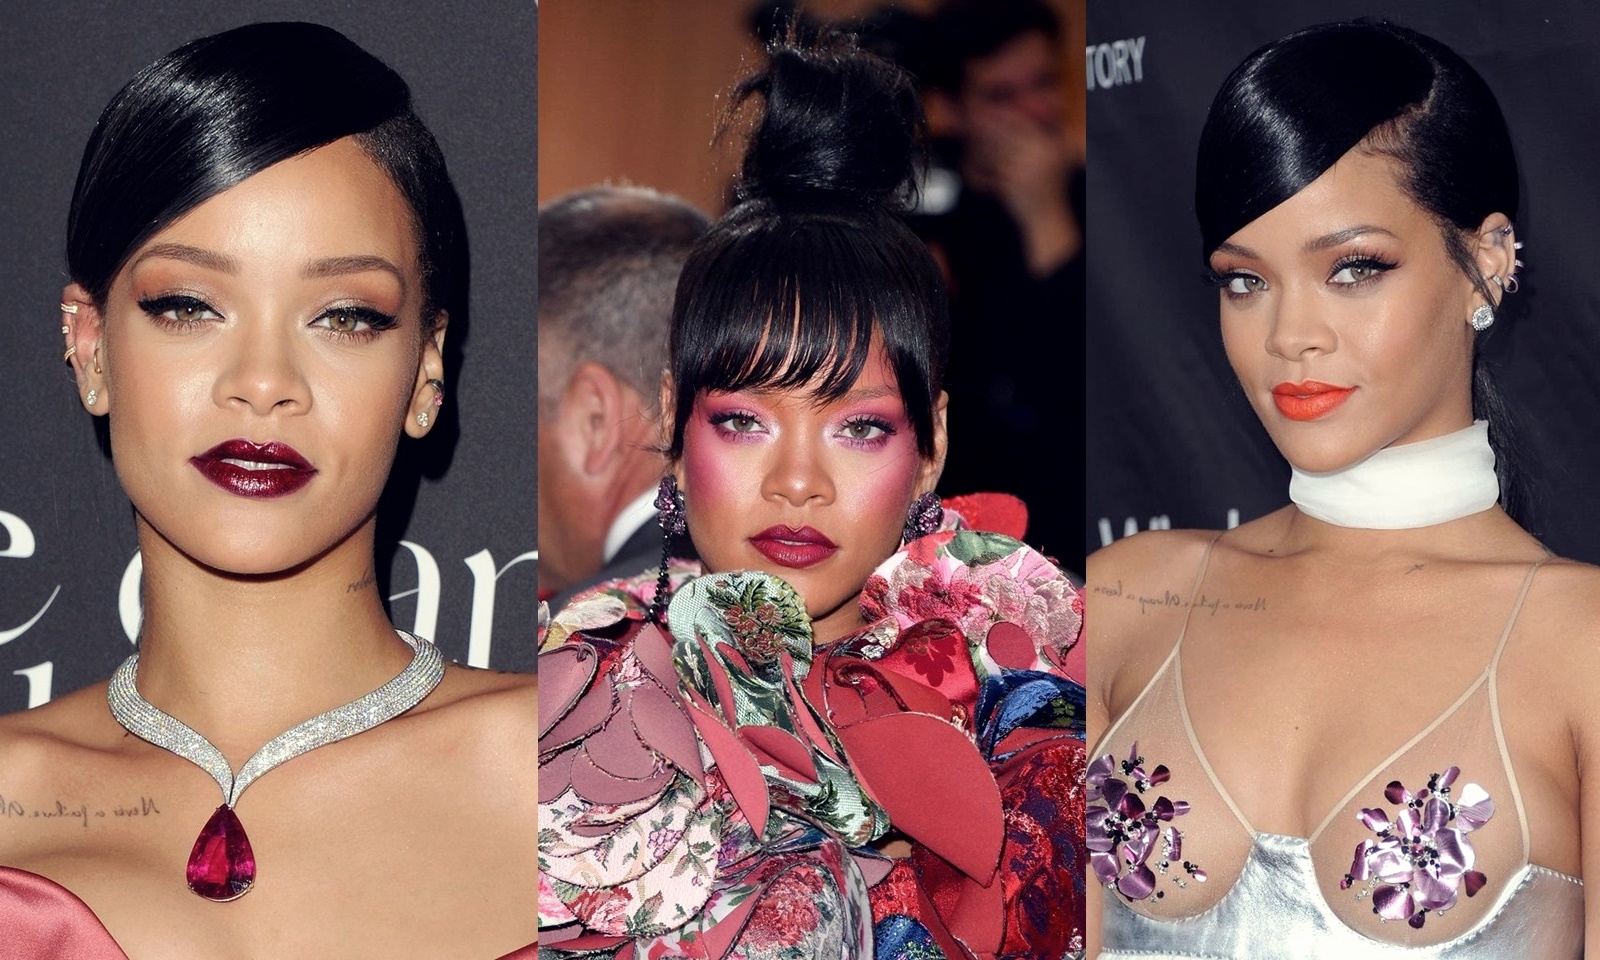 5 kiểu trang điểm kinh điển này đã làm nên tượng đài phong cách Rihanna ngày hôm nay